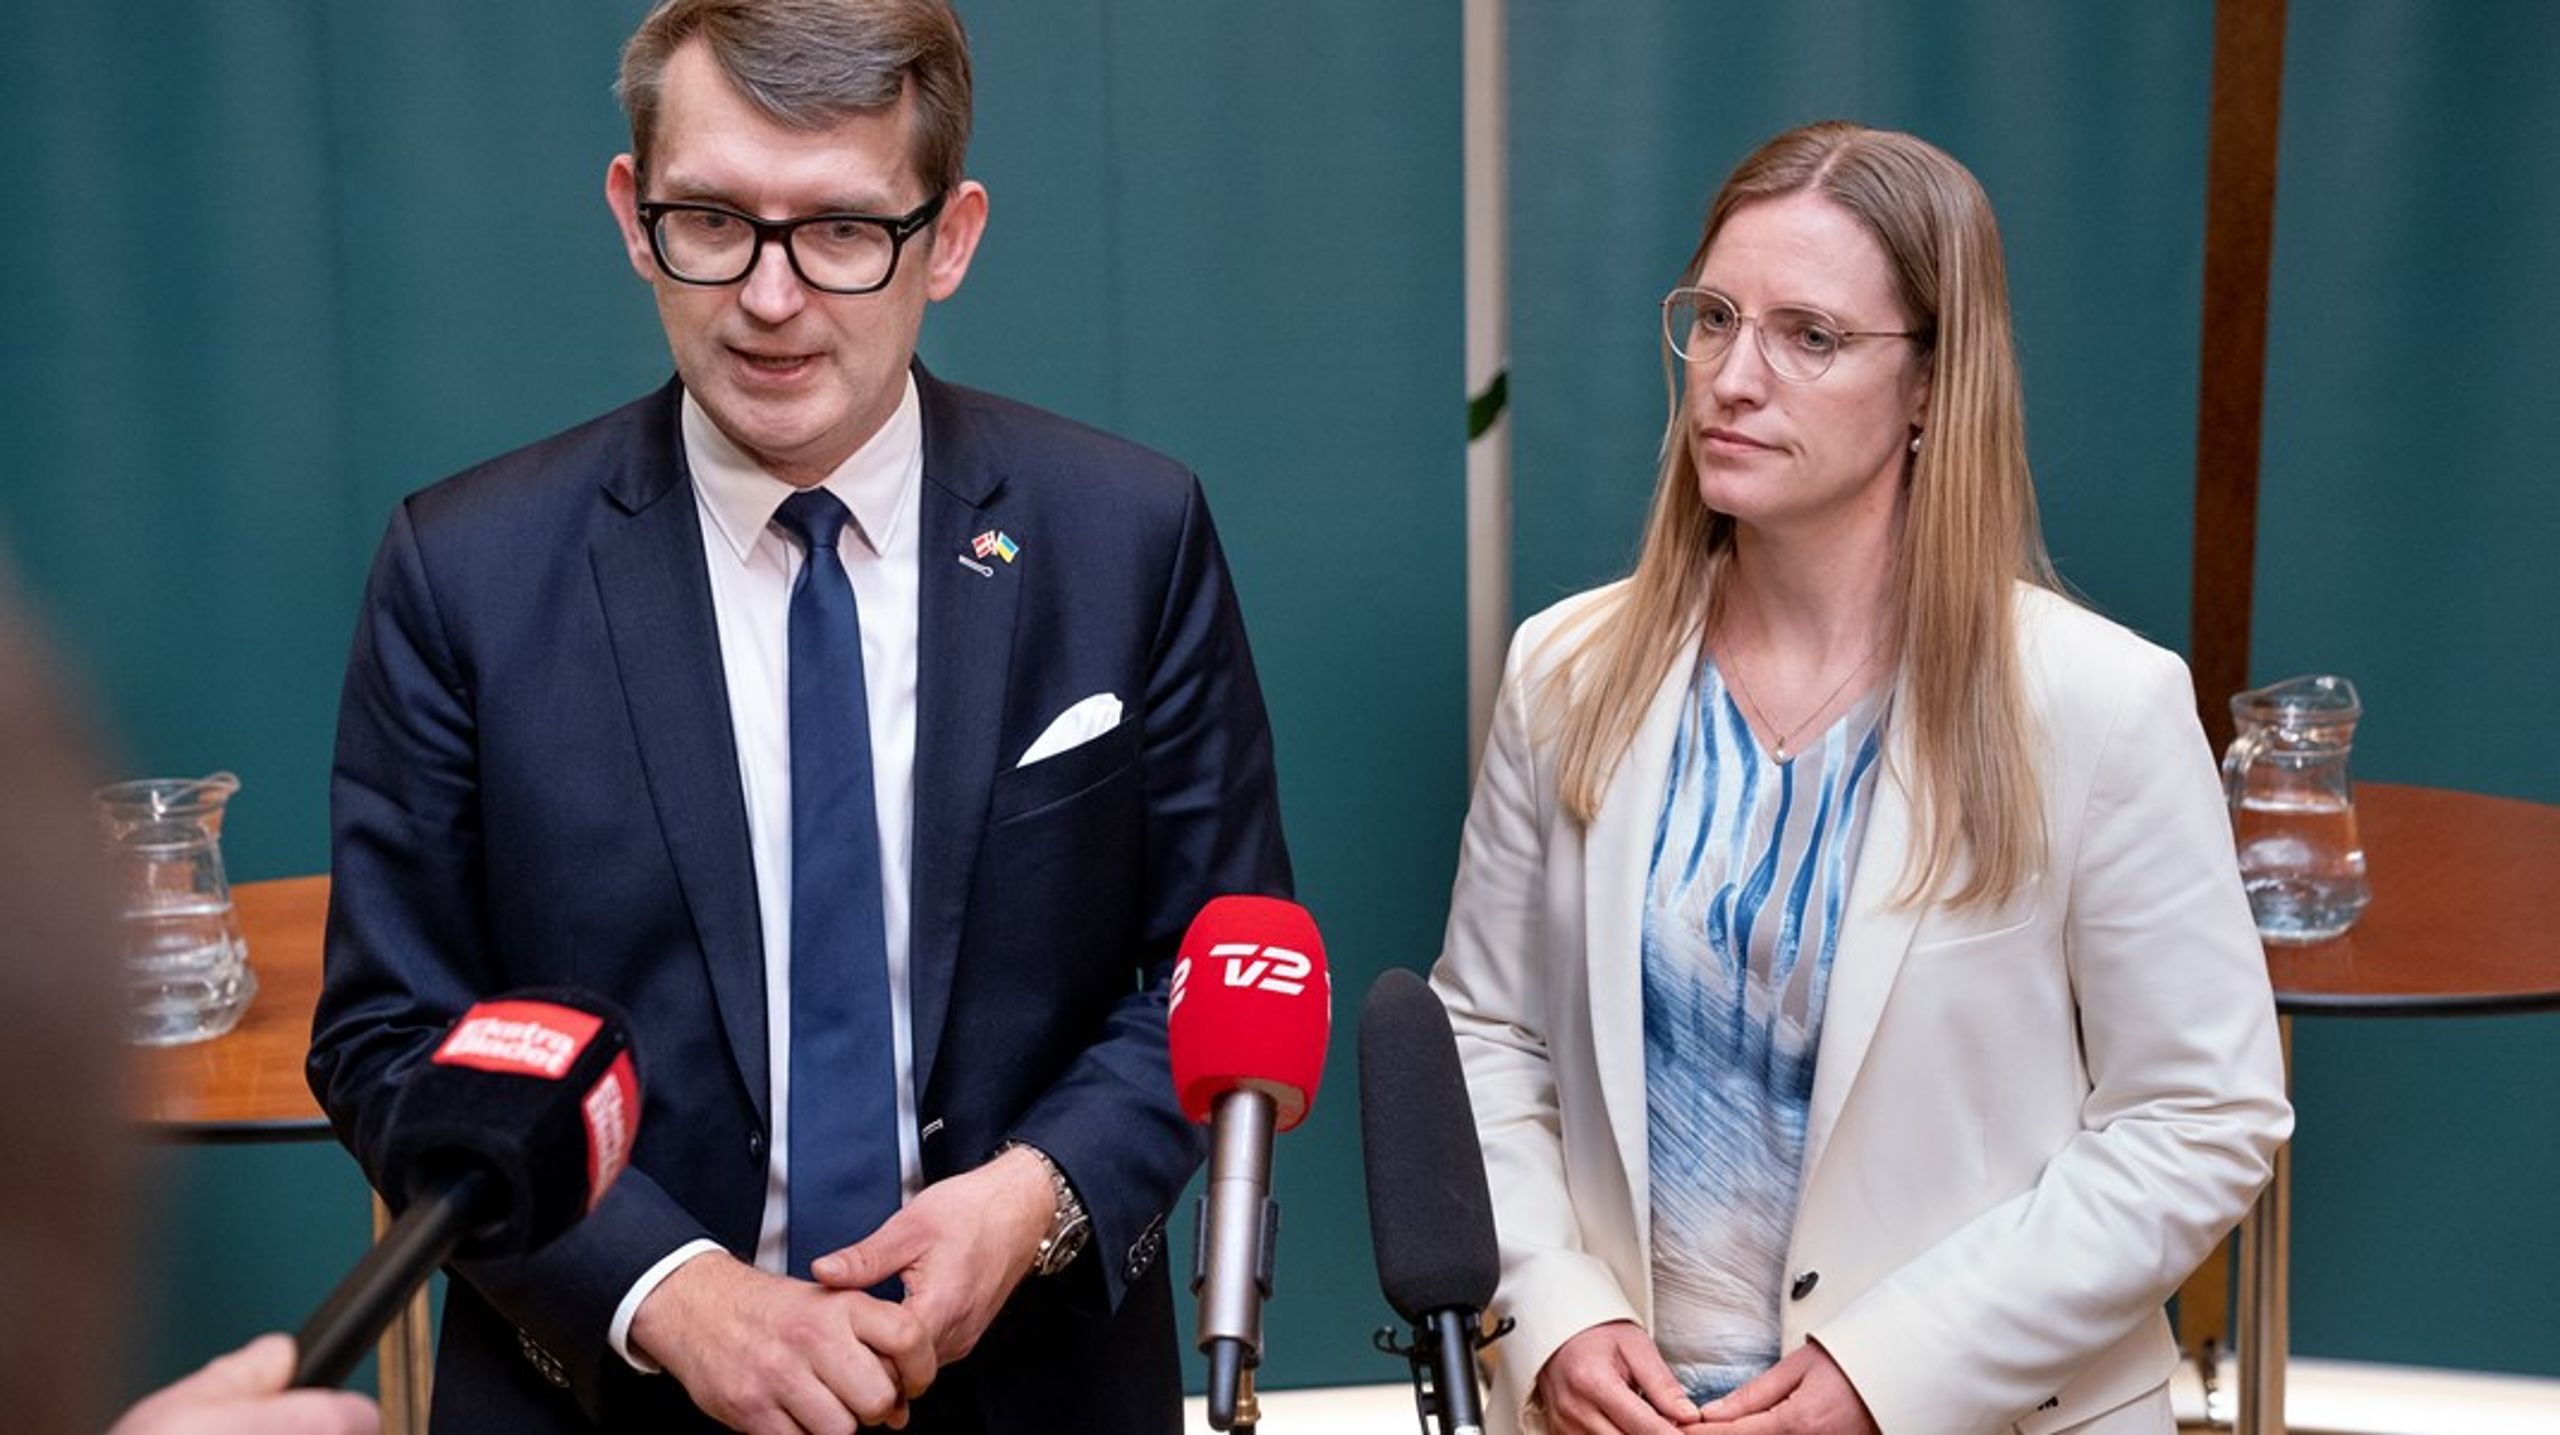 Troels Lund Poulsen og Stephanie Lose, der står i front for Venstre i formandens sygefravær, fremstår som bureaukratiske embedsmænd, der ikke kan vinde næste valg, skriver Poul Madsen.